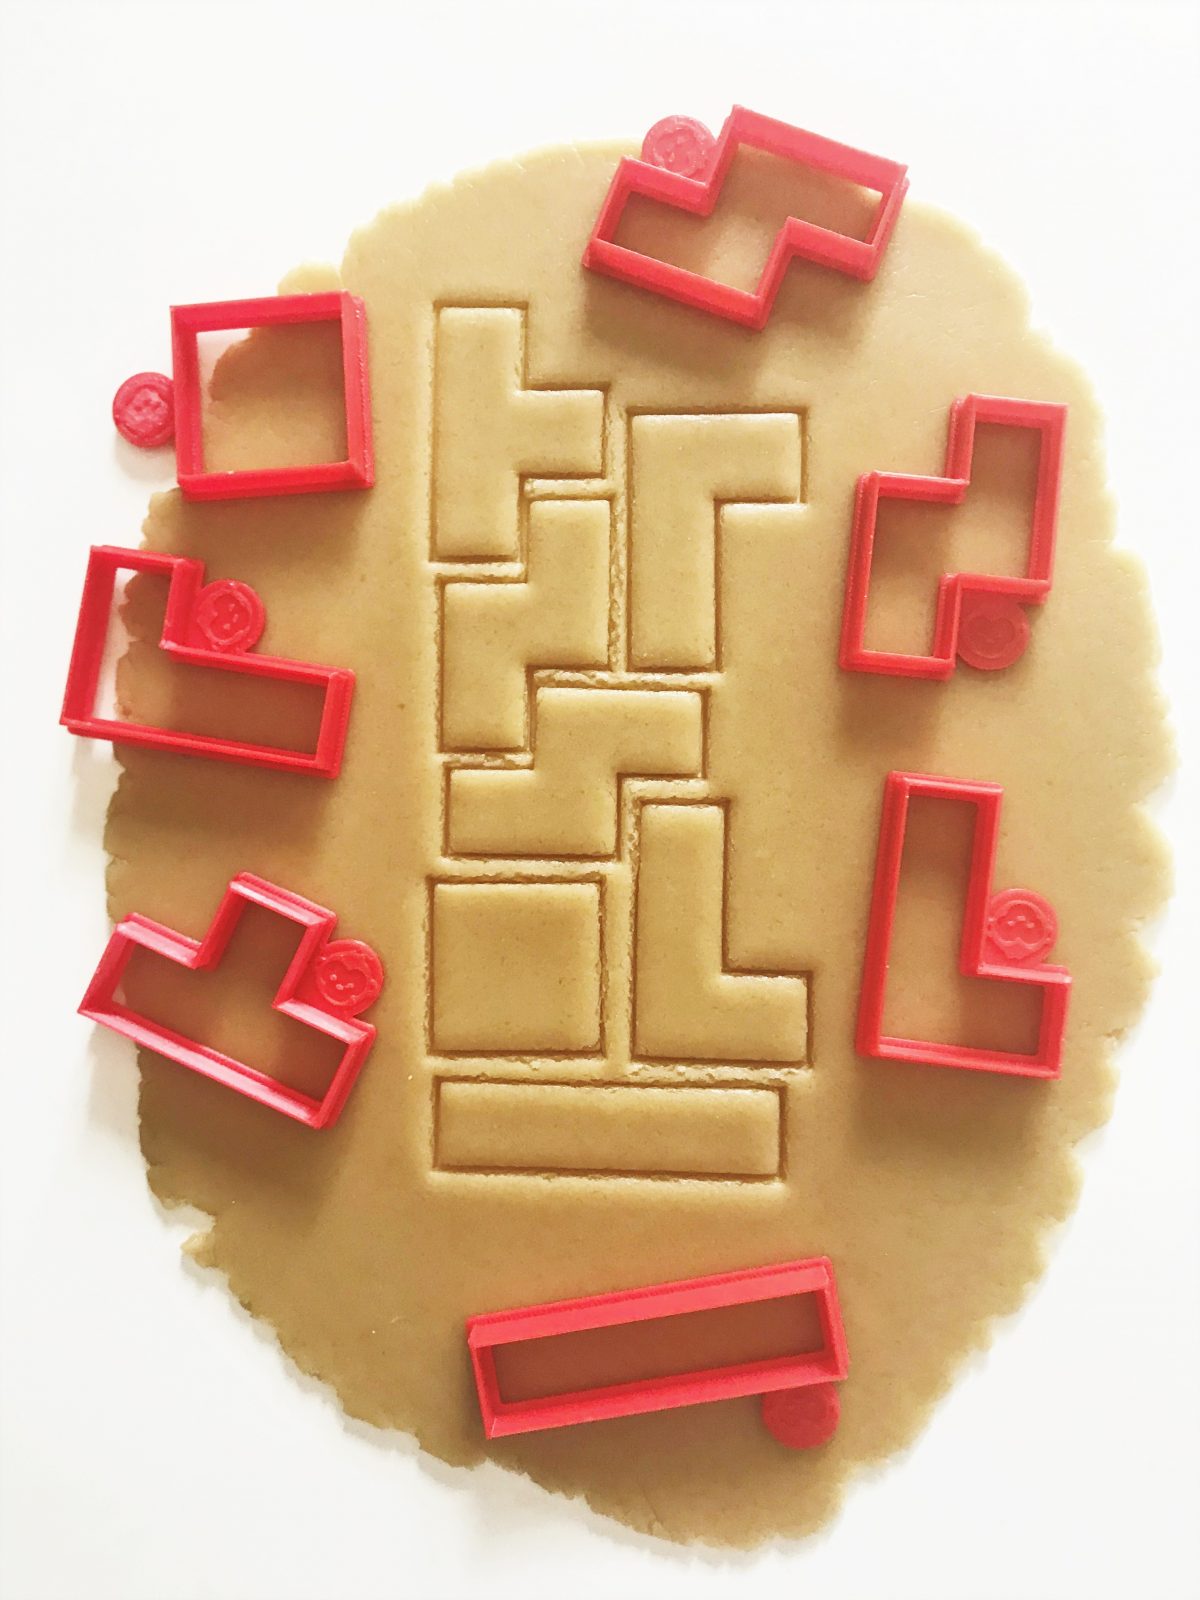 Tetris Cookie Cutter Set